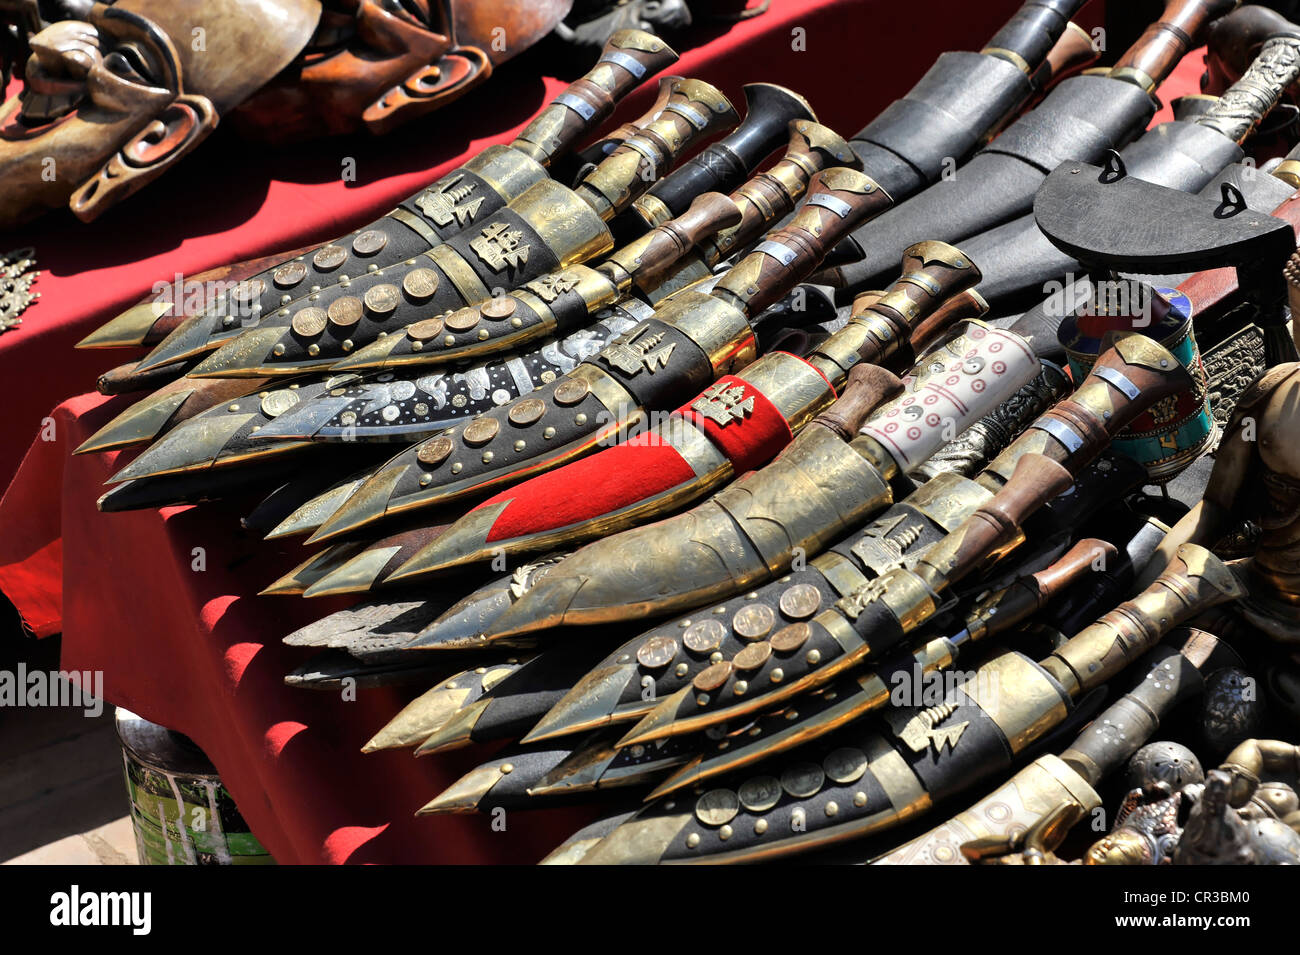 Gurkha Kukri knives, traditional knife of the Nepalese, keepsakes, souvenirs, Kathmandu, Nepal, Asia Stock Photo